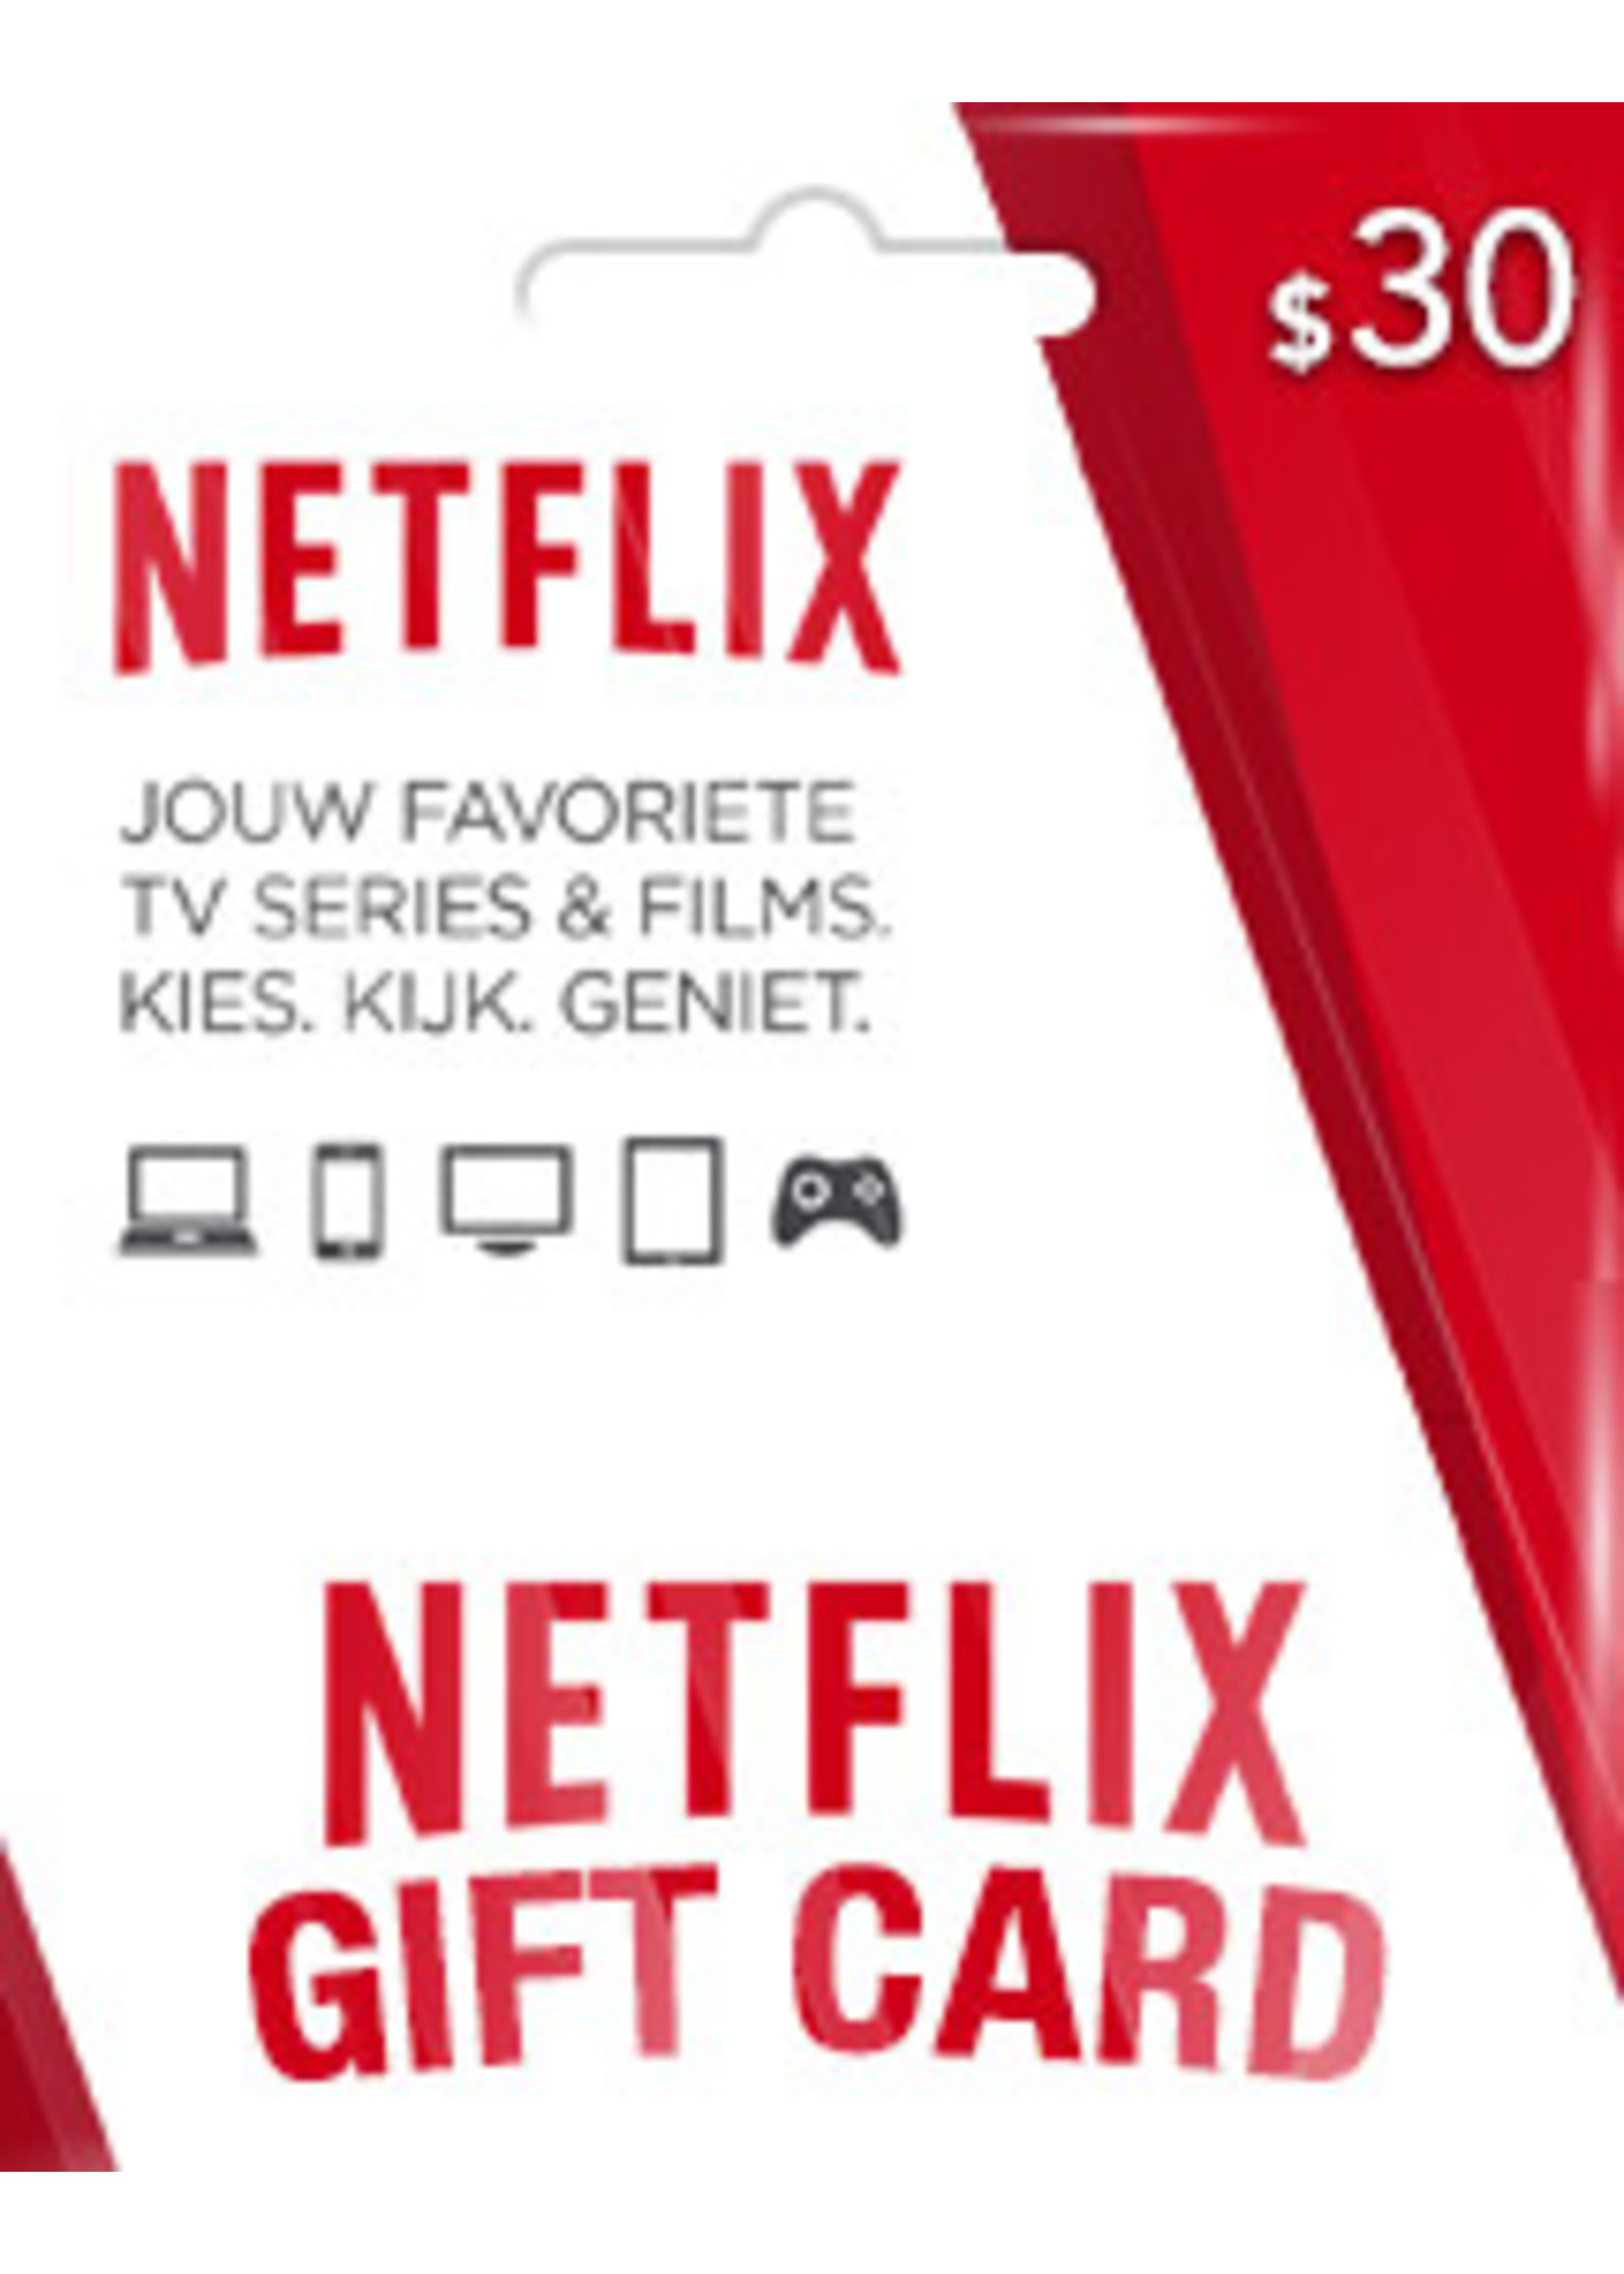 Netflix $30 Gift Card